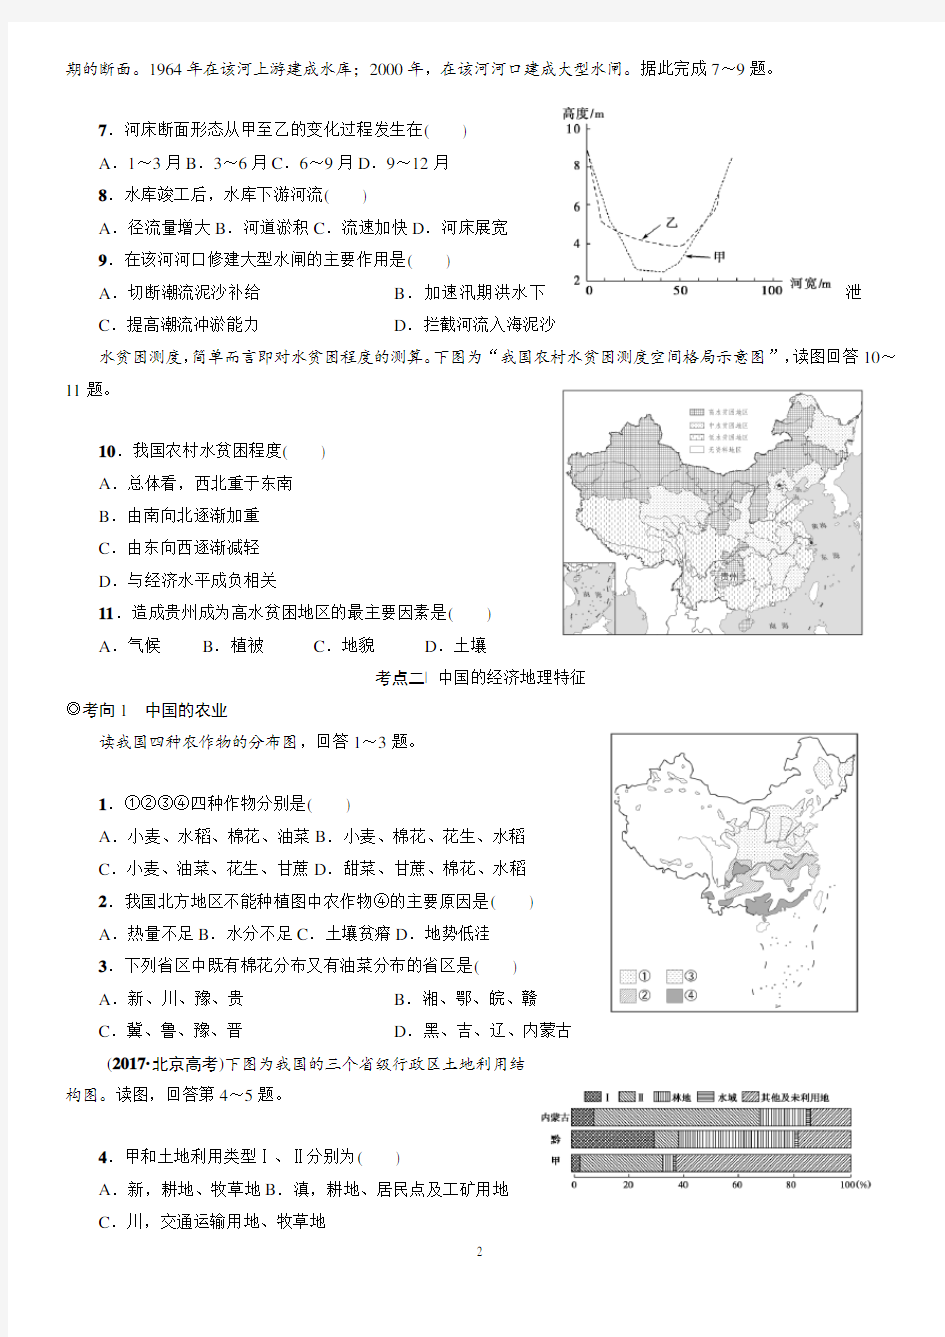  中国地理概况